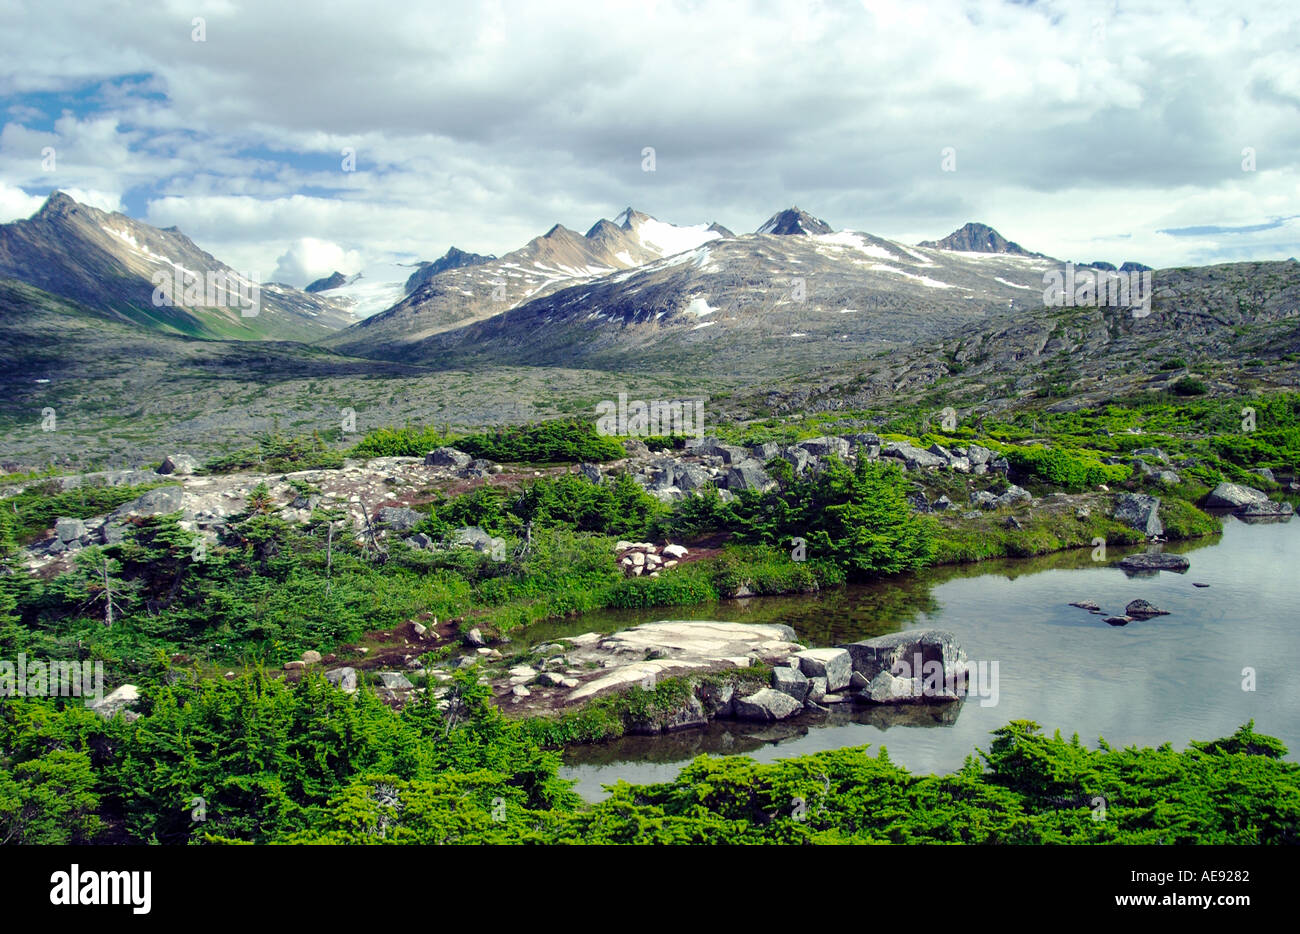 Mountain scenery in the Yukon territories of Canada Stock Photo